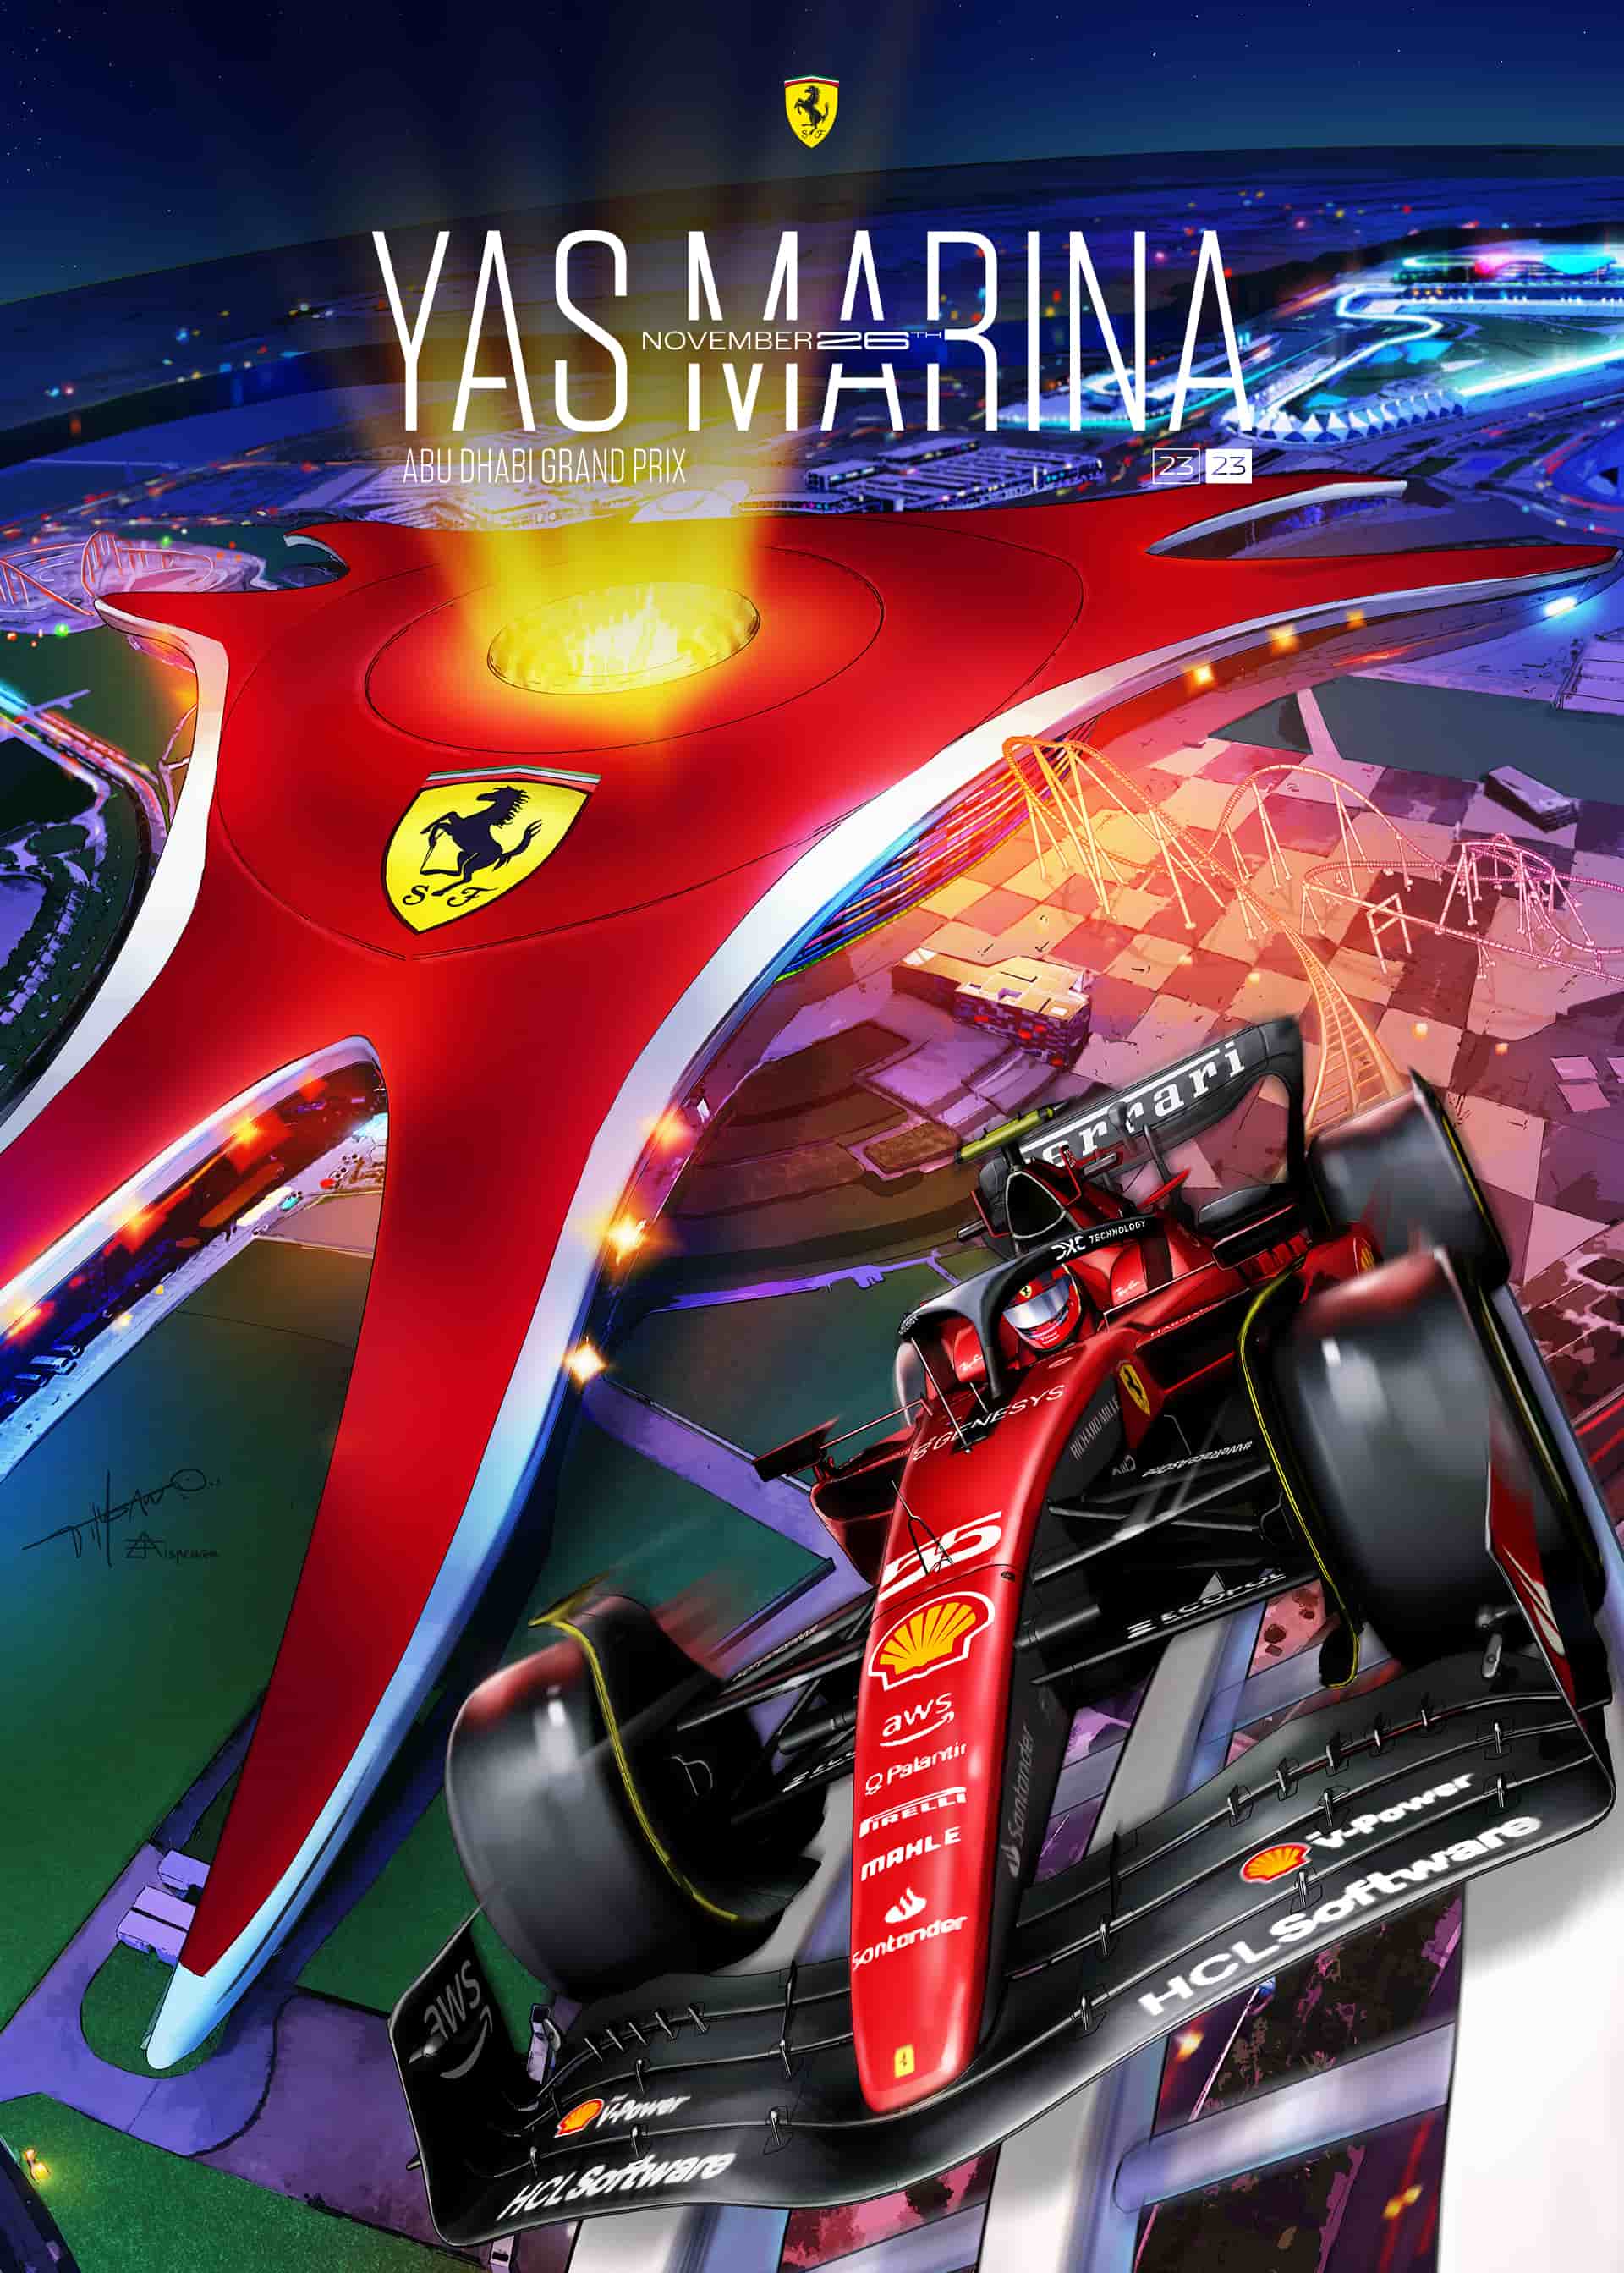 Équipes et pilotes de Formule 1 2023 Poster – SportsChord